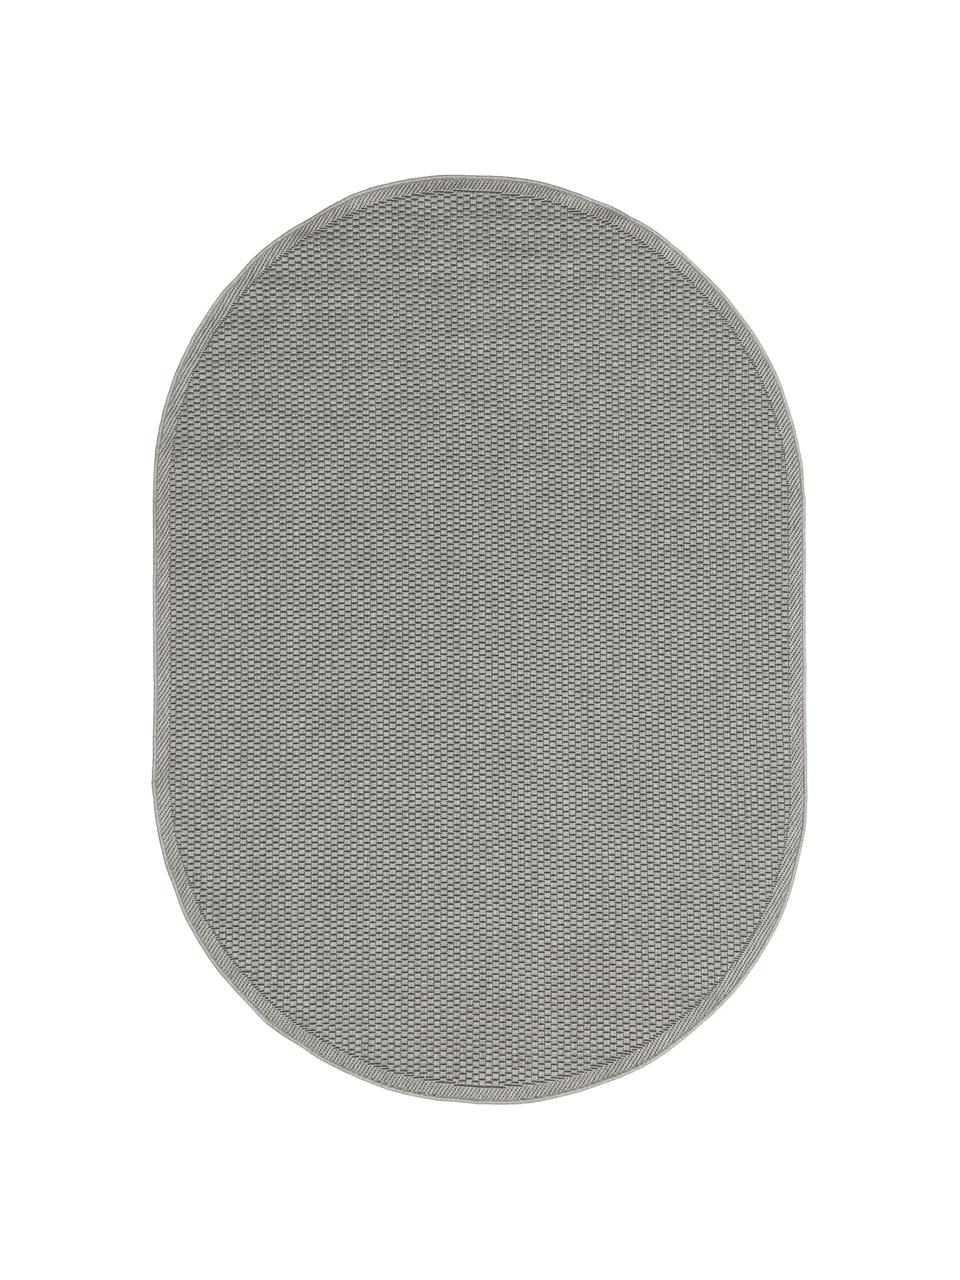 Ovaler In- & Outdoor-Teppich Toronto in Grau, 100% Polypropylen, Grau, B 160 x L 230 cm (Größe M)